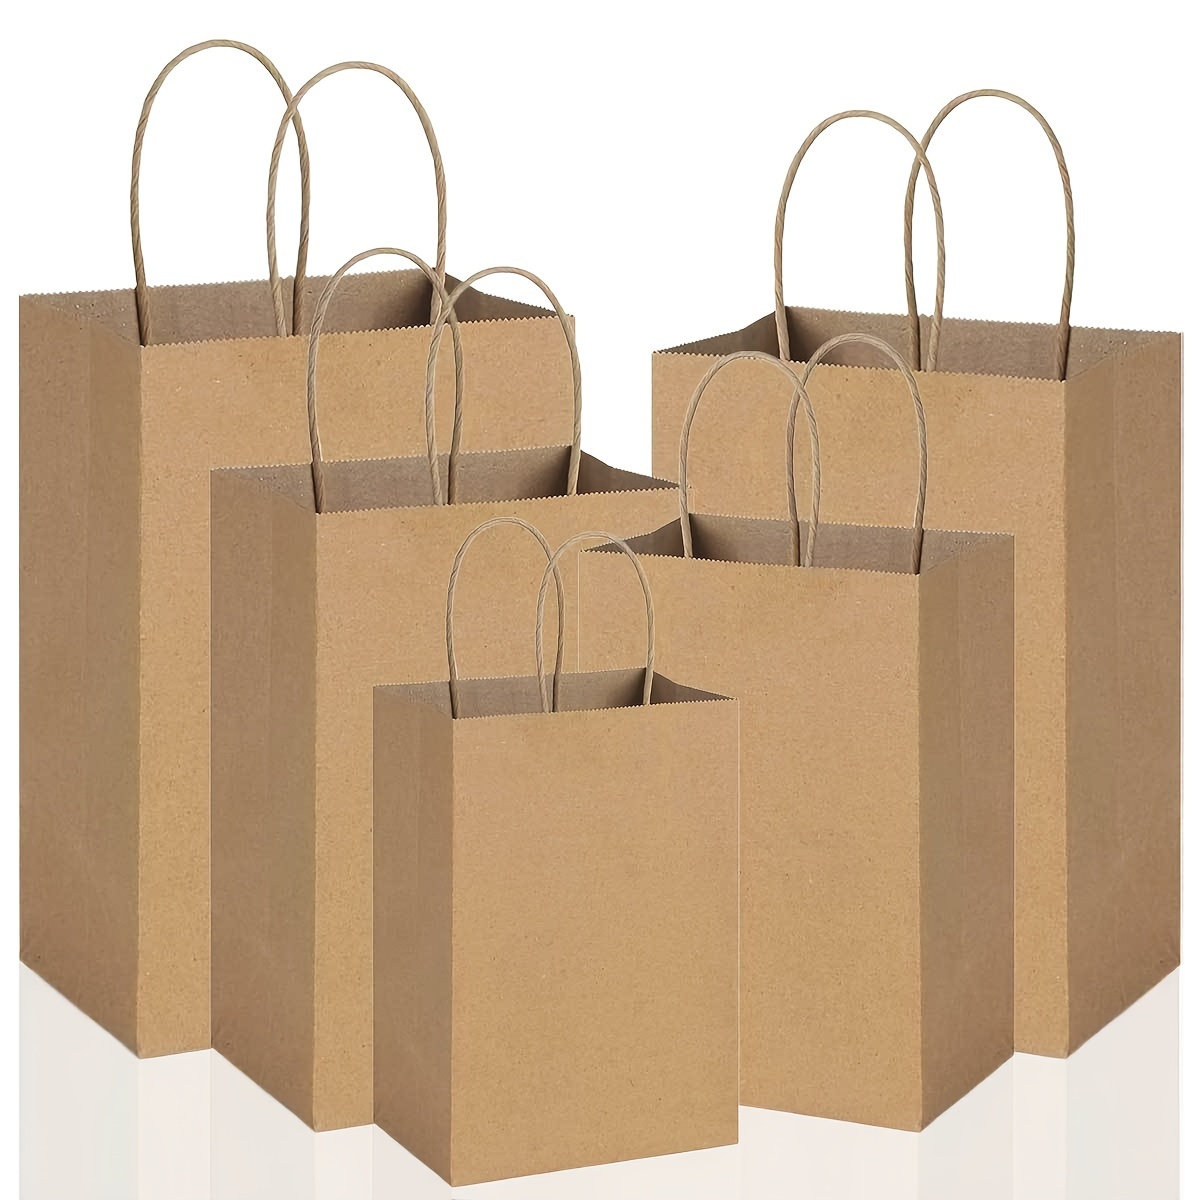 Bolsas de papel para regalo  Gift bags diy, Diy paper bag, Paper gift bags